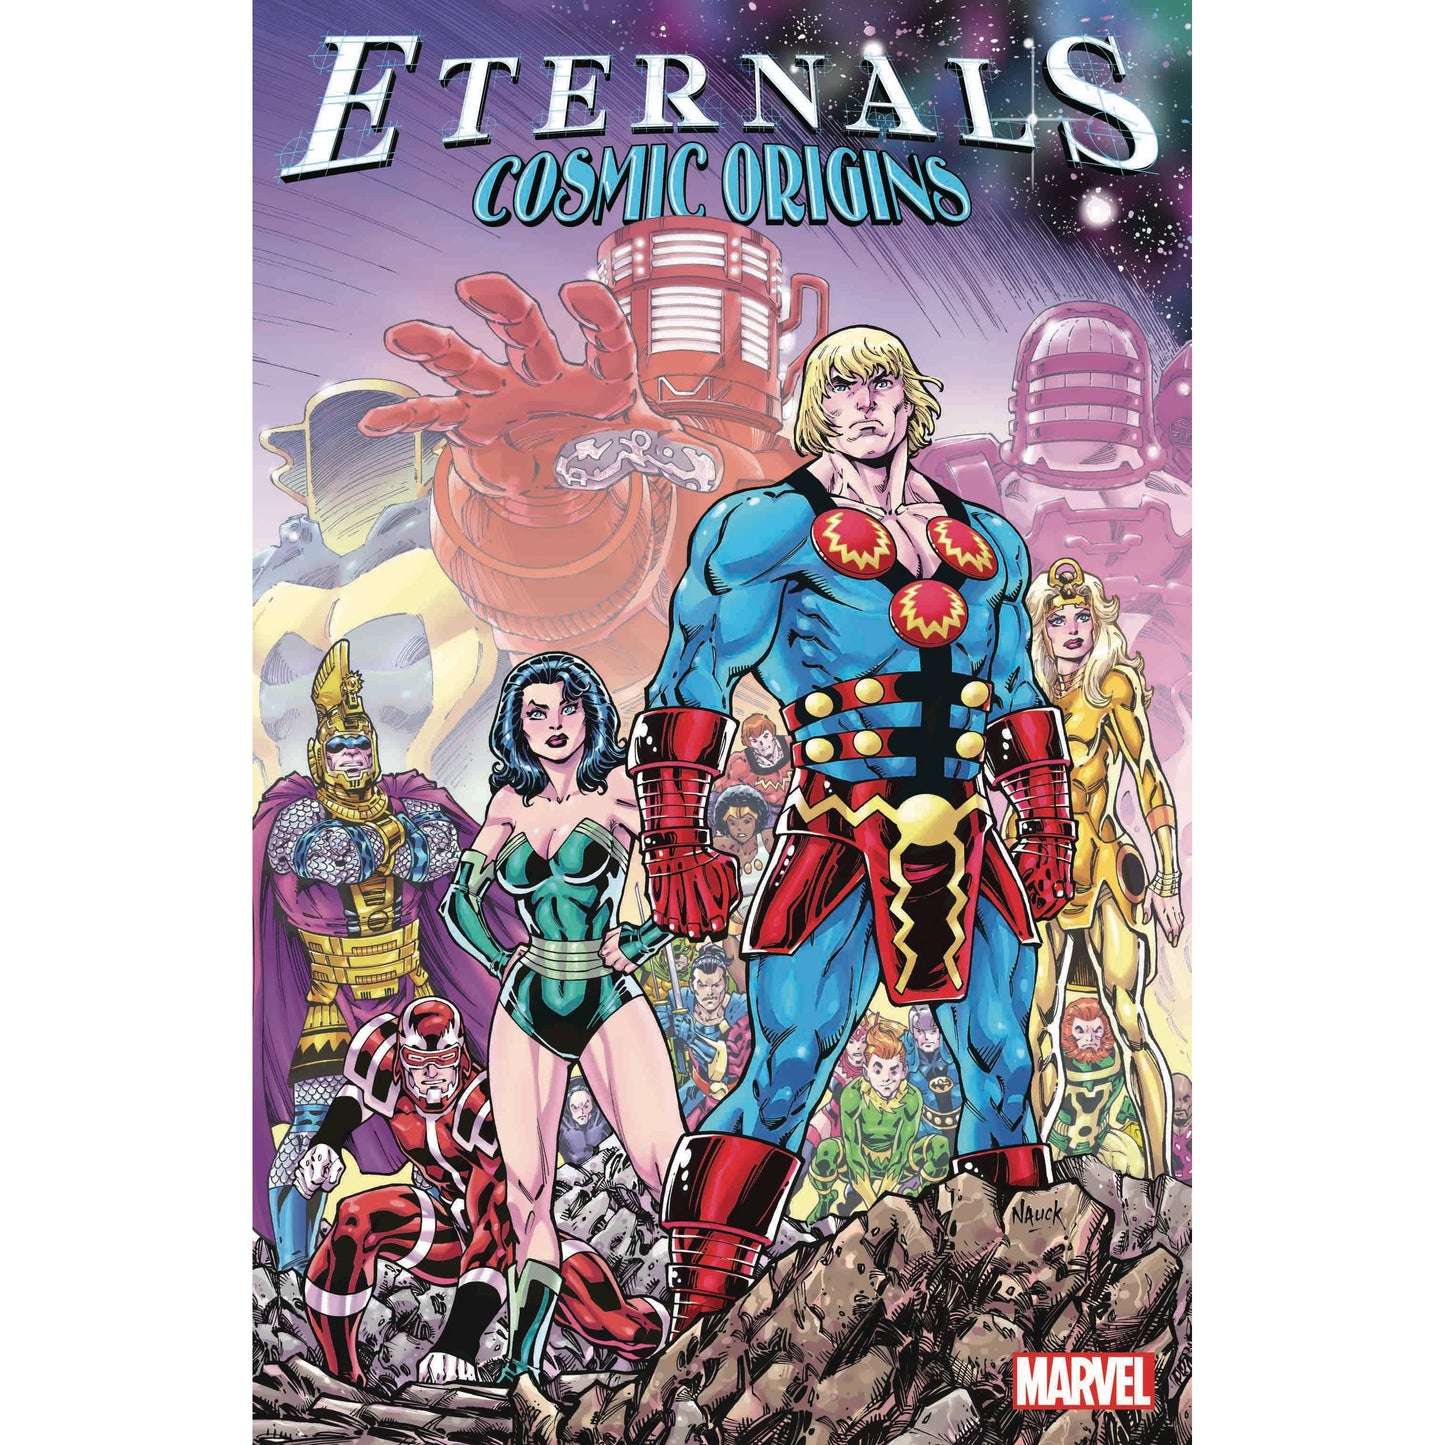 Eternals: Cosmic Origins